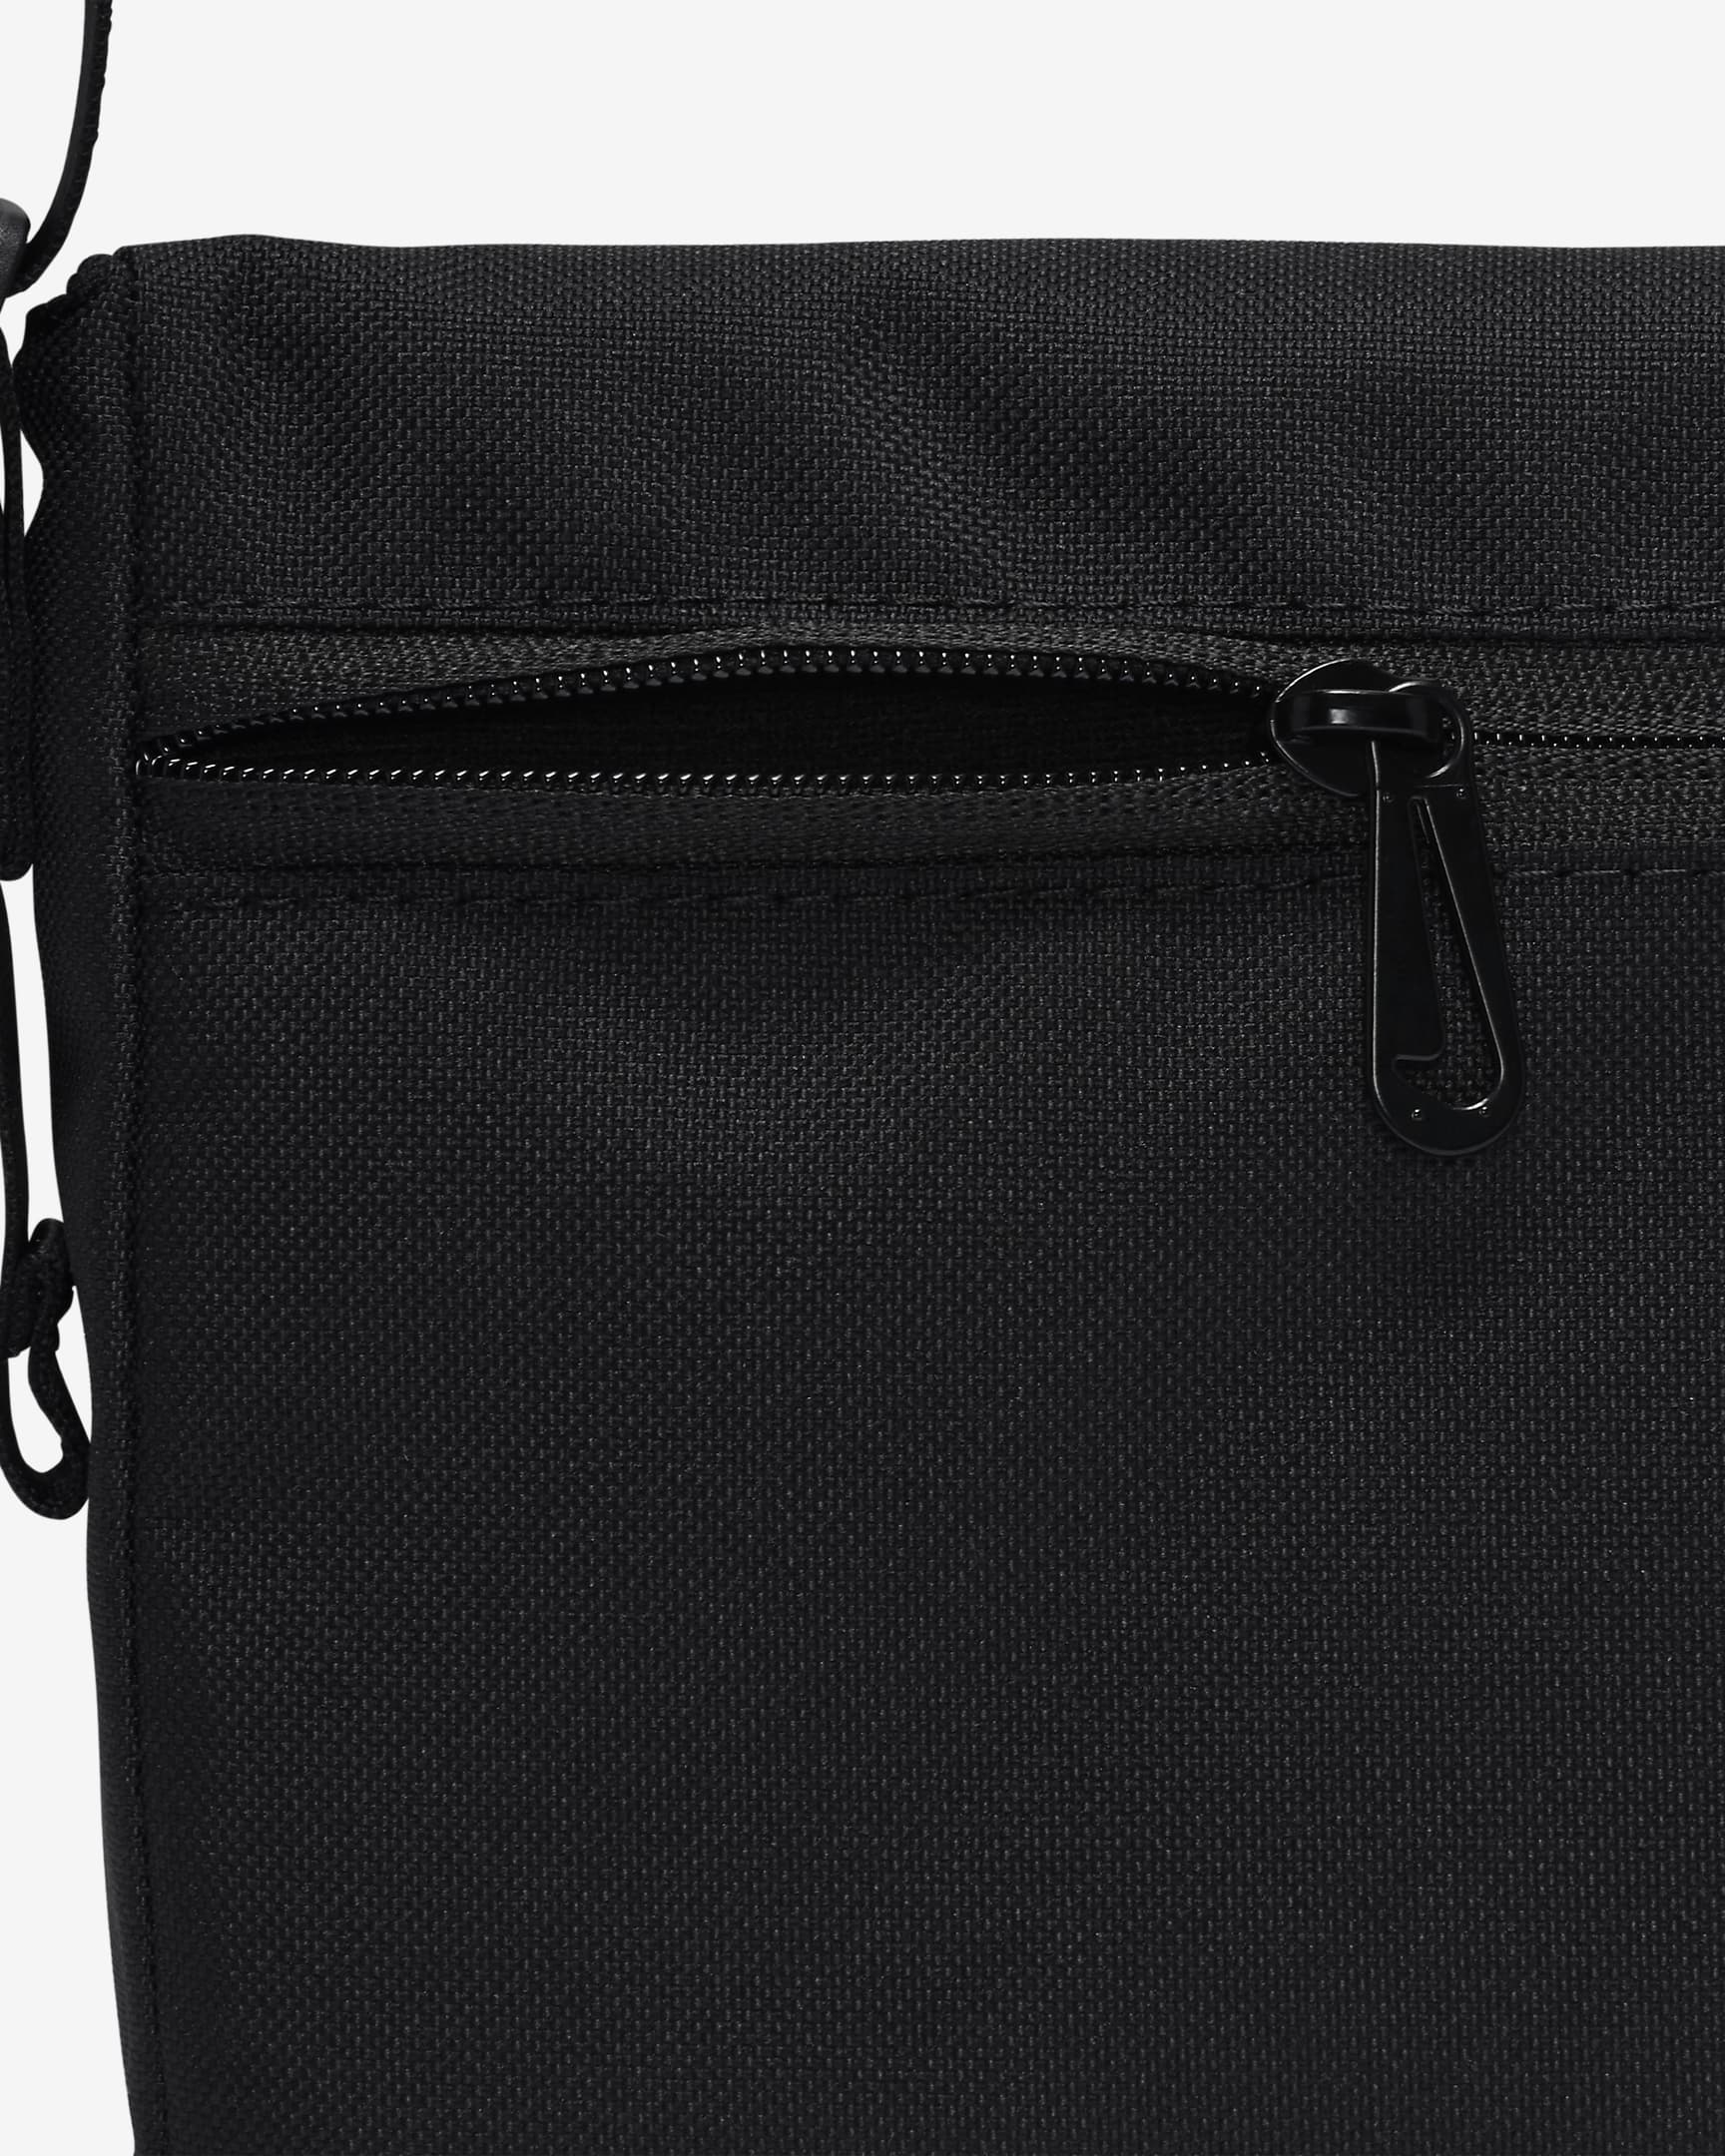 Nike Sportswear Futura 365 Cross-body Bag (3L). Nike ID